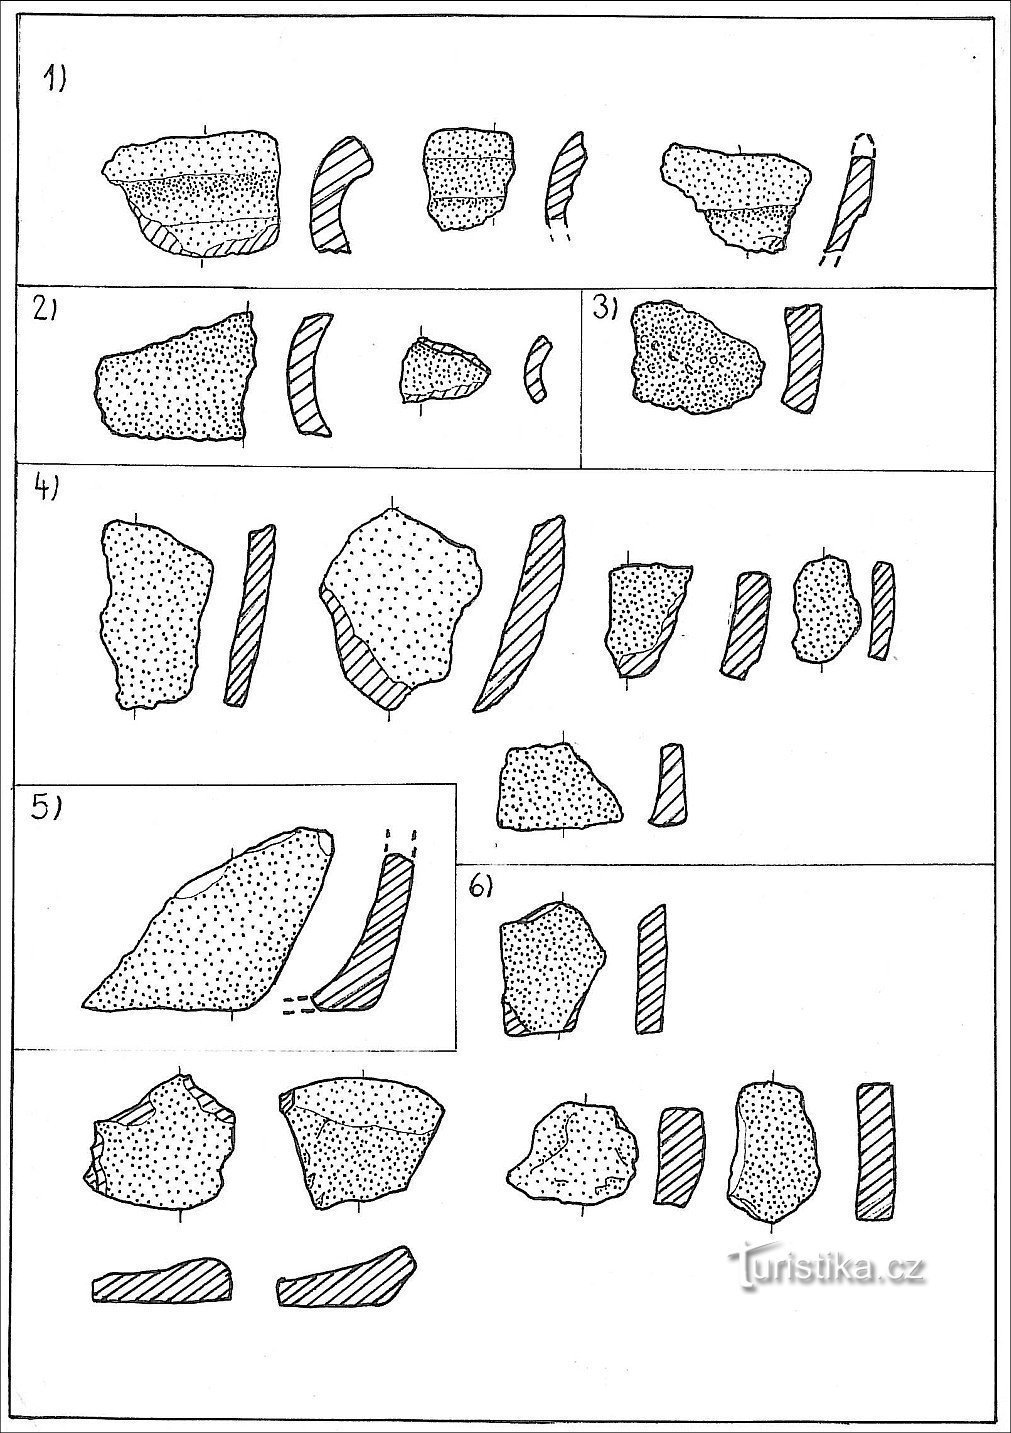 exemple de ceramică de deal; 1) margini, 2) gât, 3) umeri, 4) corp, 5) bază, 6) fund